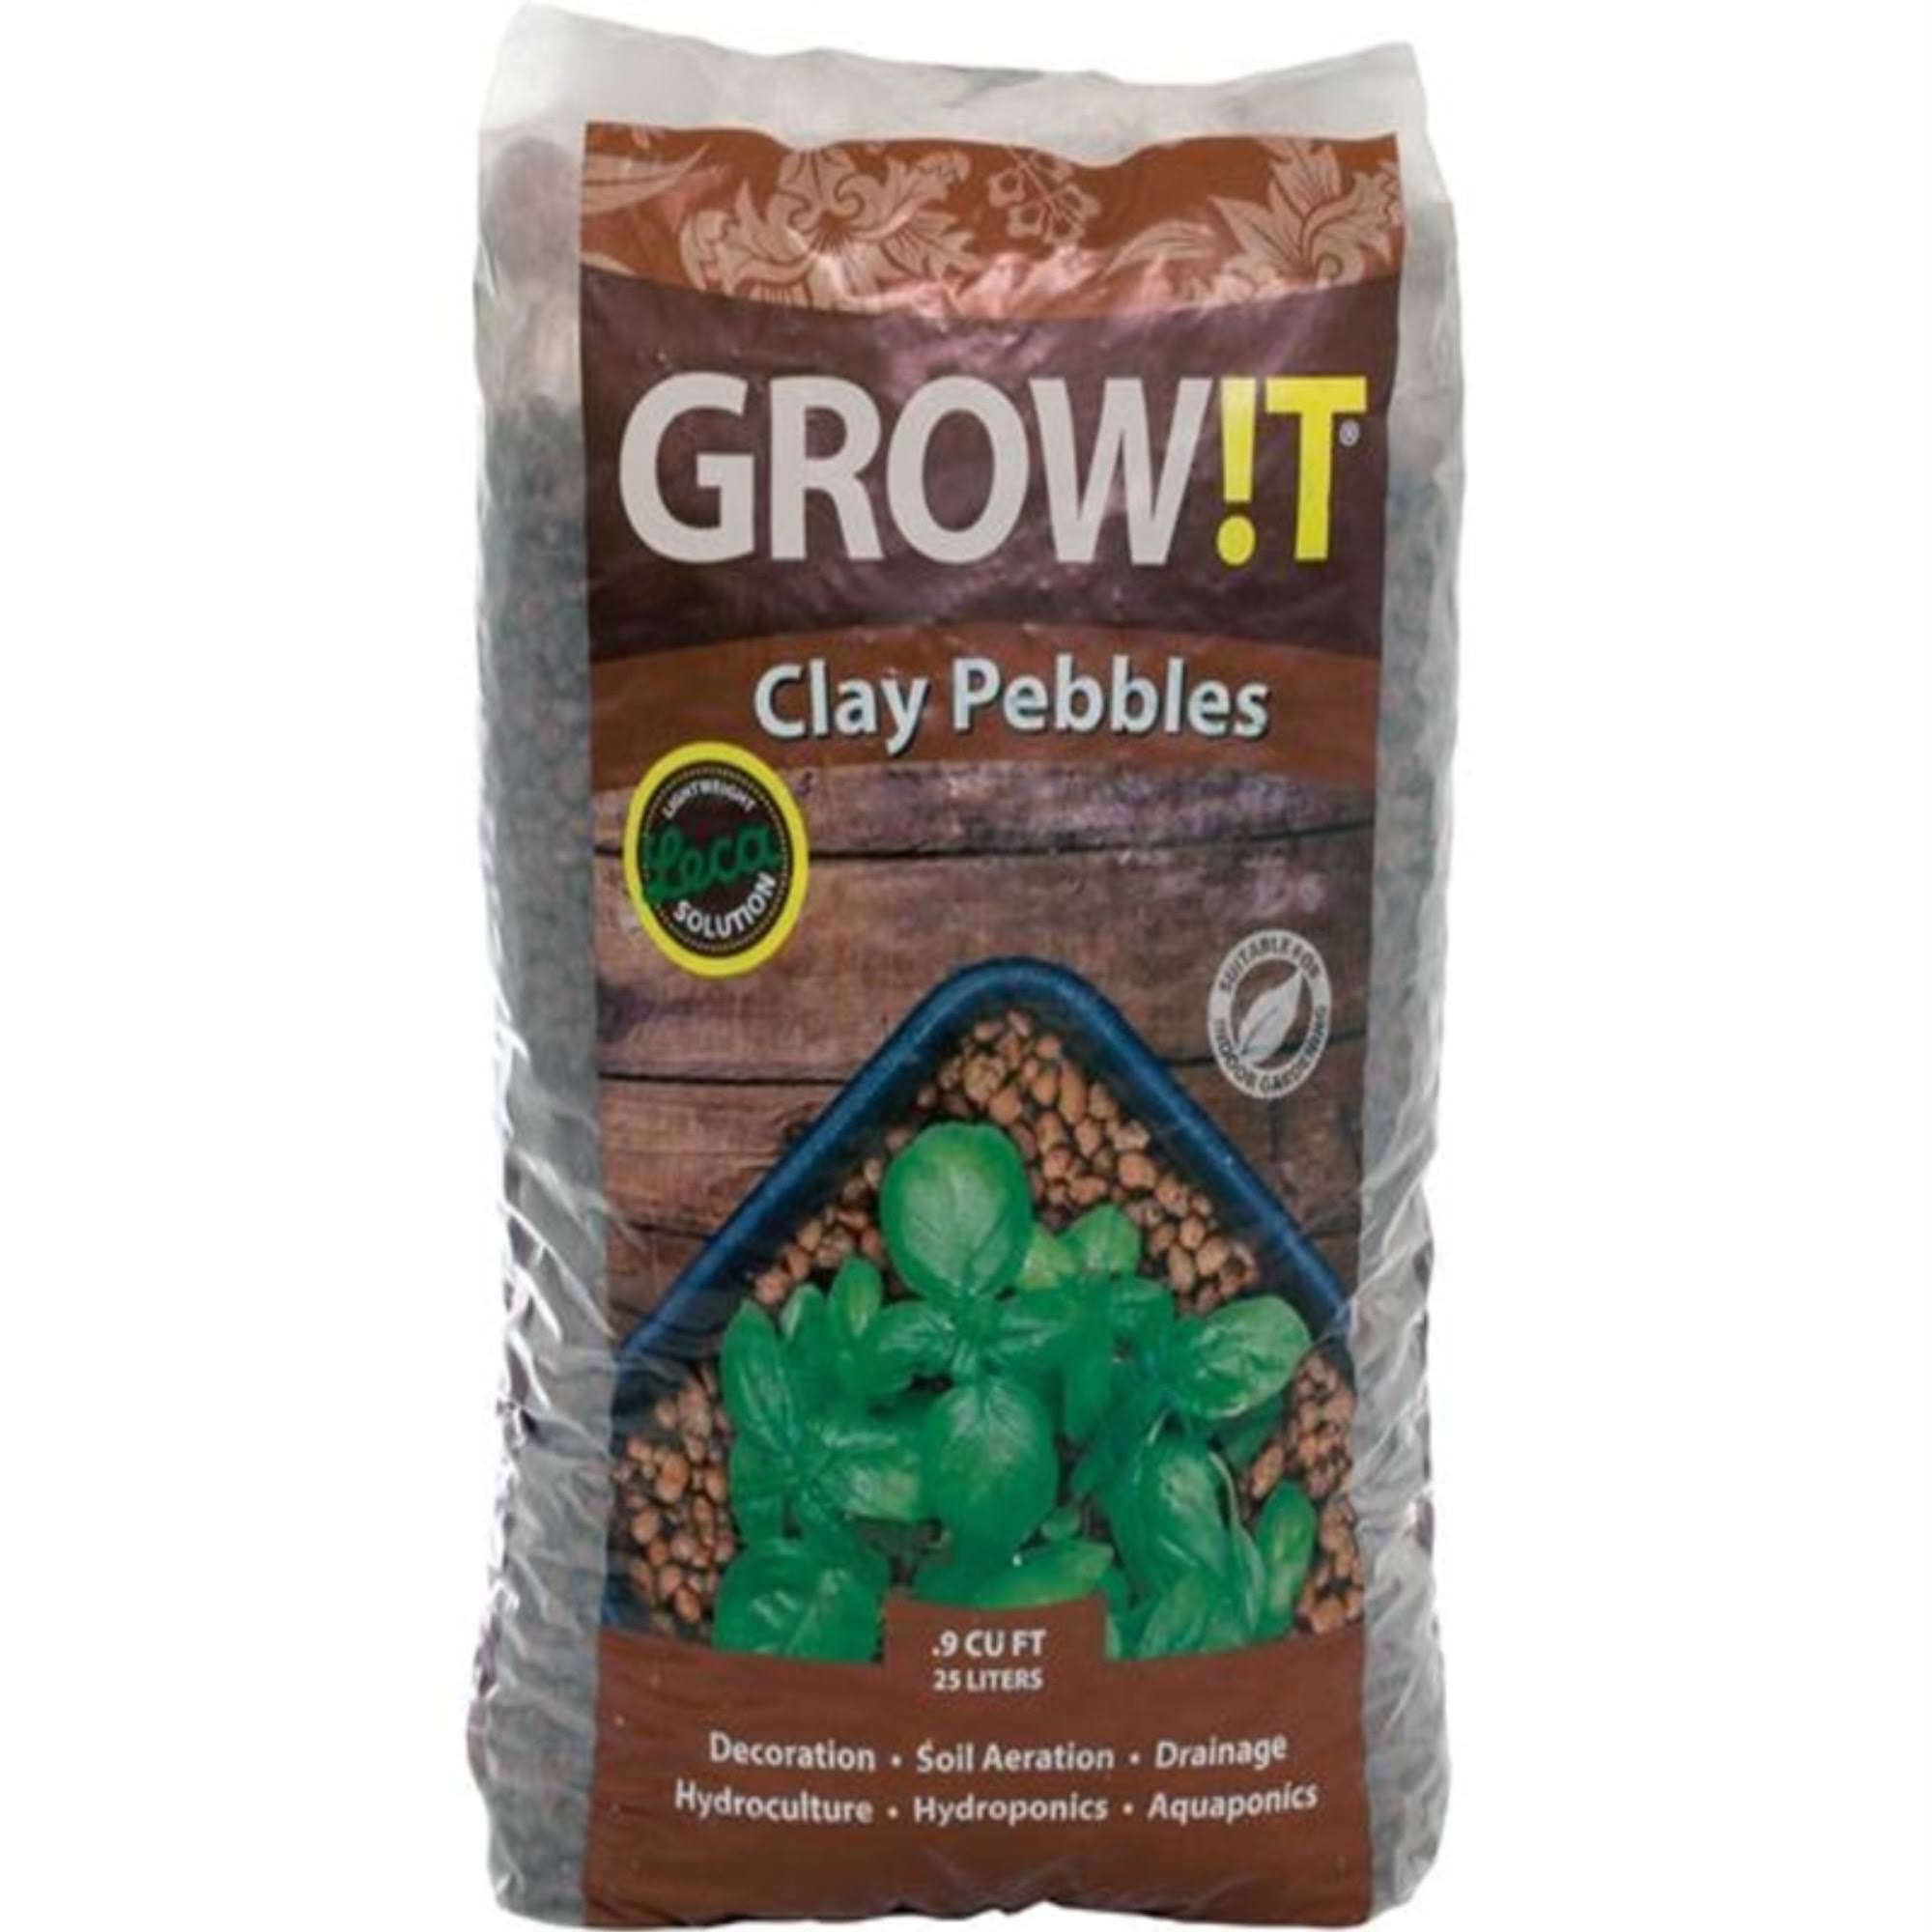 GROW!T - Clay Pebbles 25 L